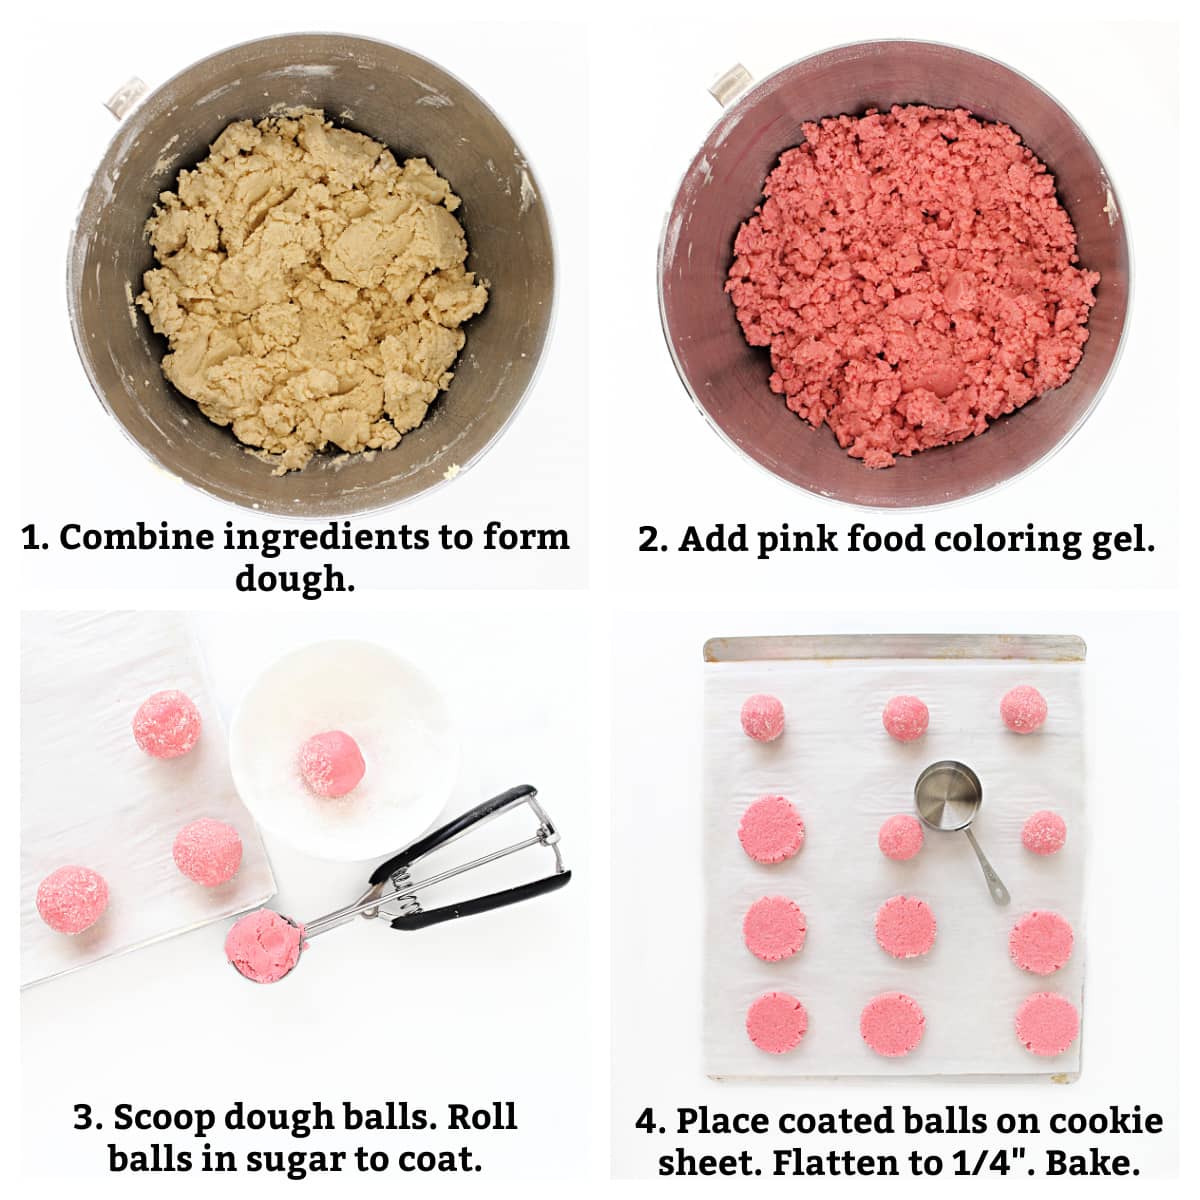 Instructions: combine ingredients, add coloring, scoop dough balls, coat in sugar, flatten on baking sheet, bake.